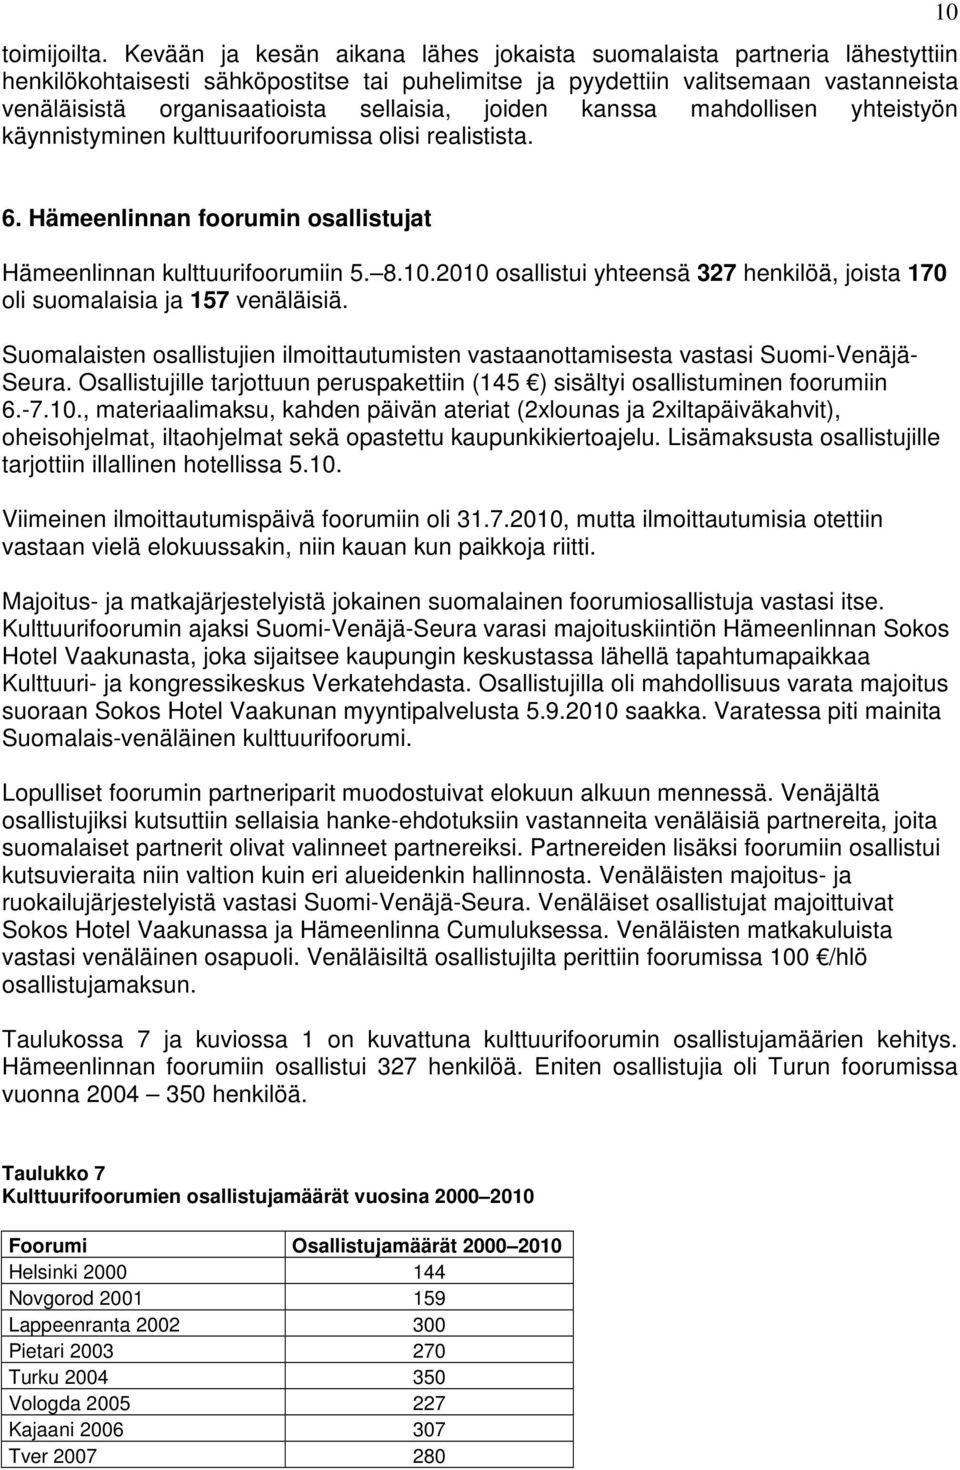 sellaisia, joiden kanssa mahdollisen yhteistyön käynnistyminen kulttuurifoorumissa olisi realistista. 10 6. Hämeenlinnan foorumin osallistujat Hämeenlinnan kulttuurifoorumiin 5. 8.10.2010 osallistui yhteensä 327 henkilöä, joista 170 oli suomalaisia ja 157 venäläisiä.